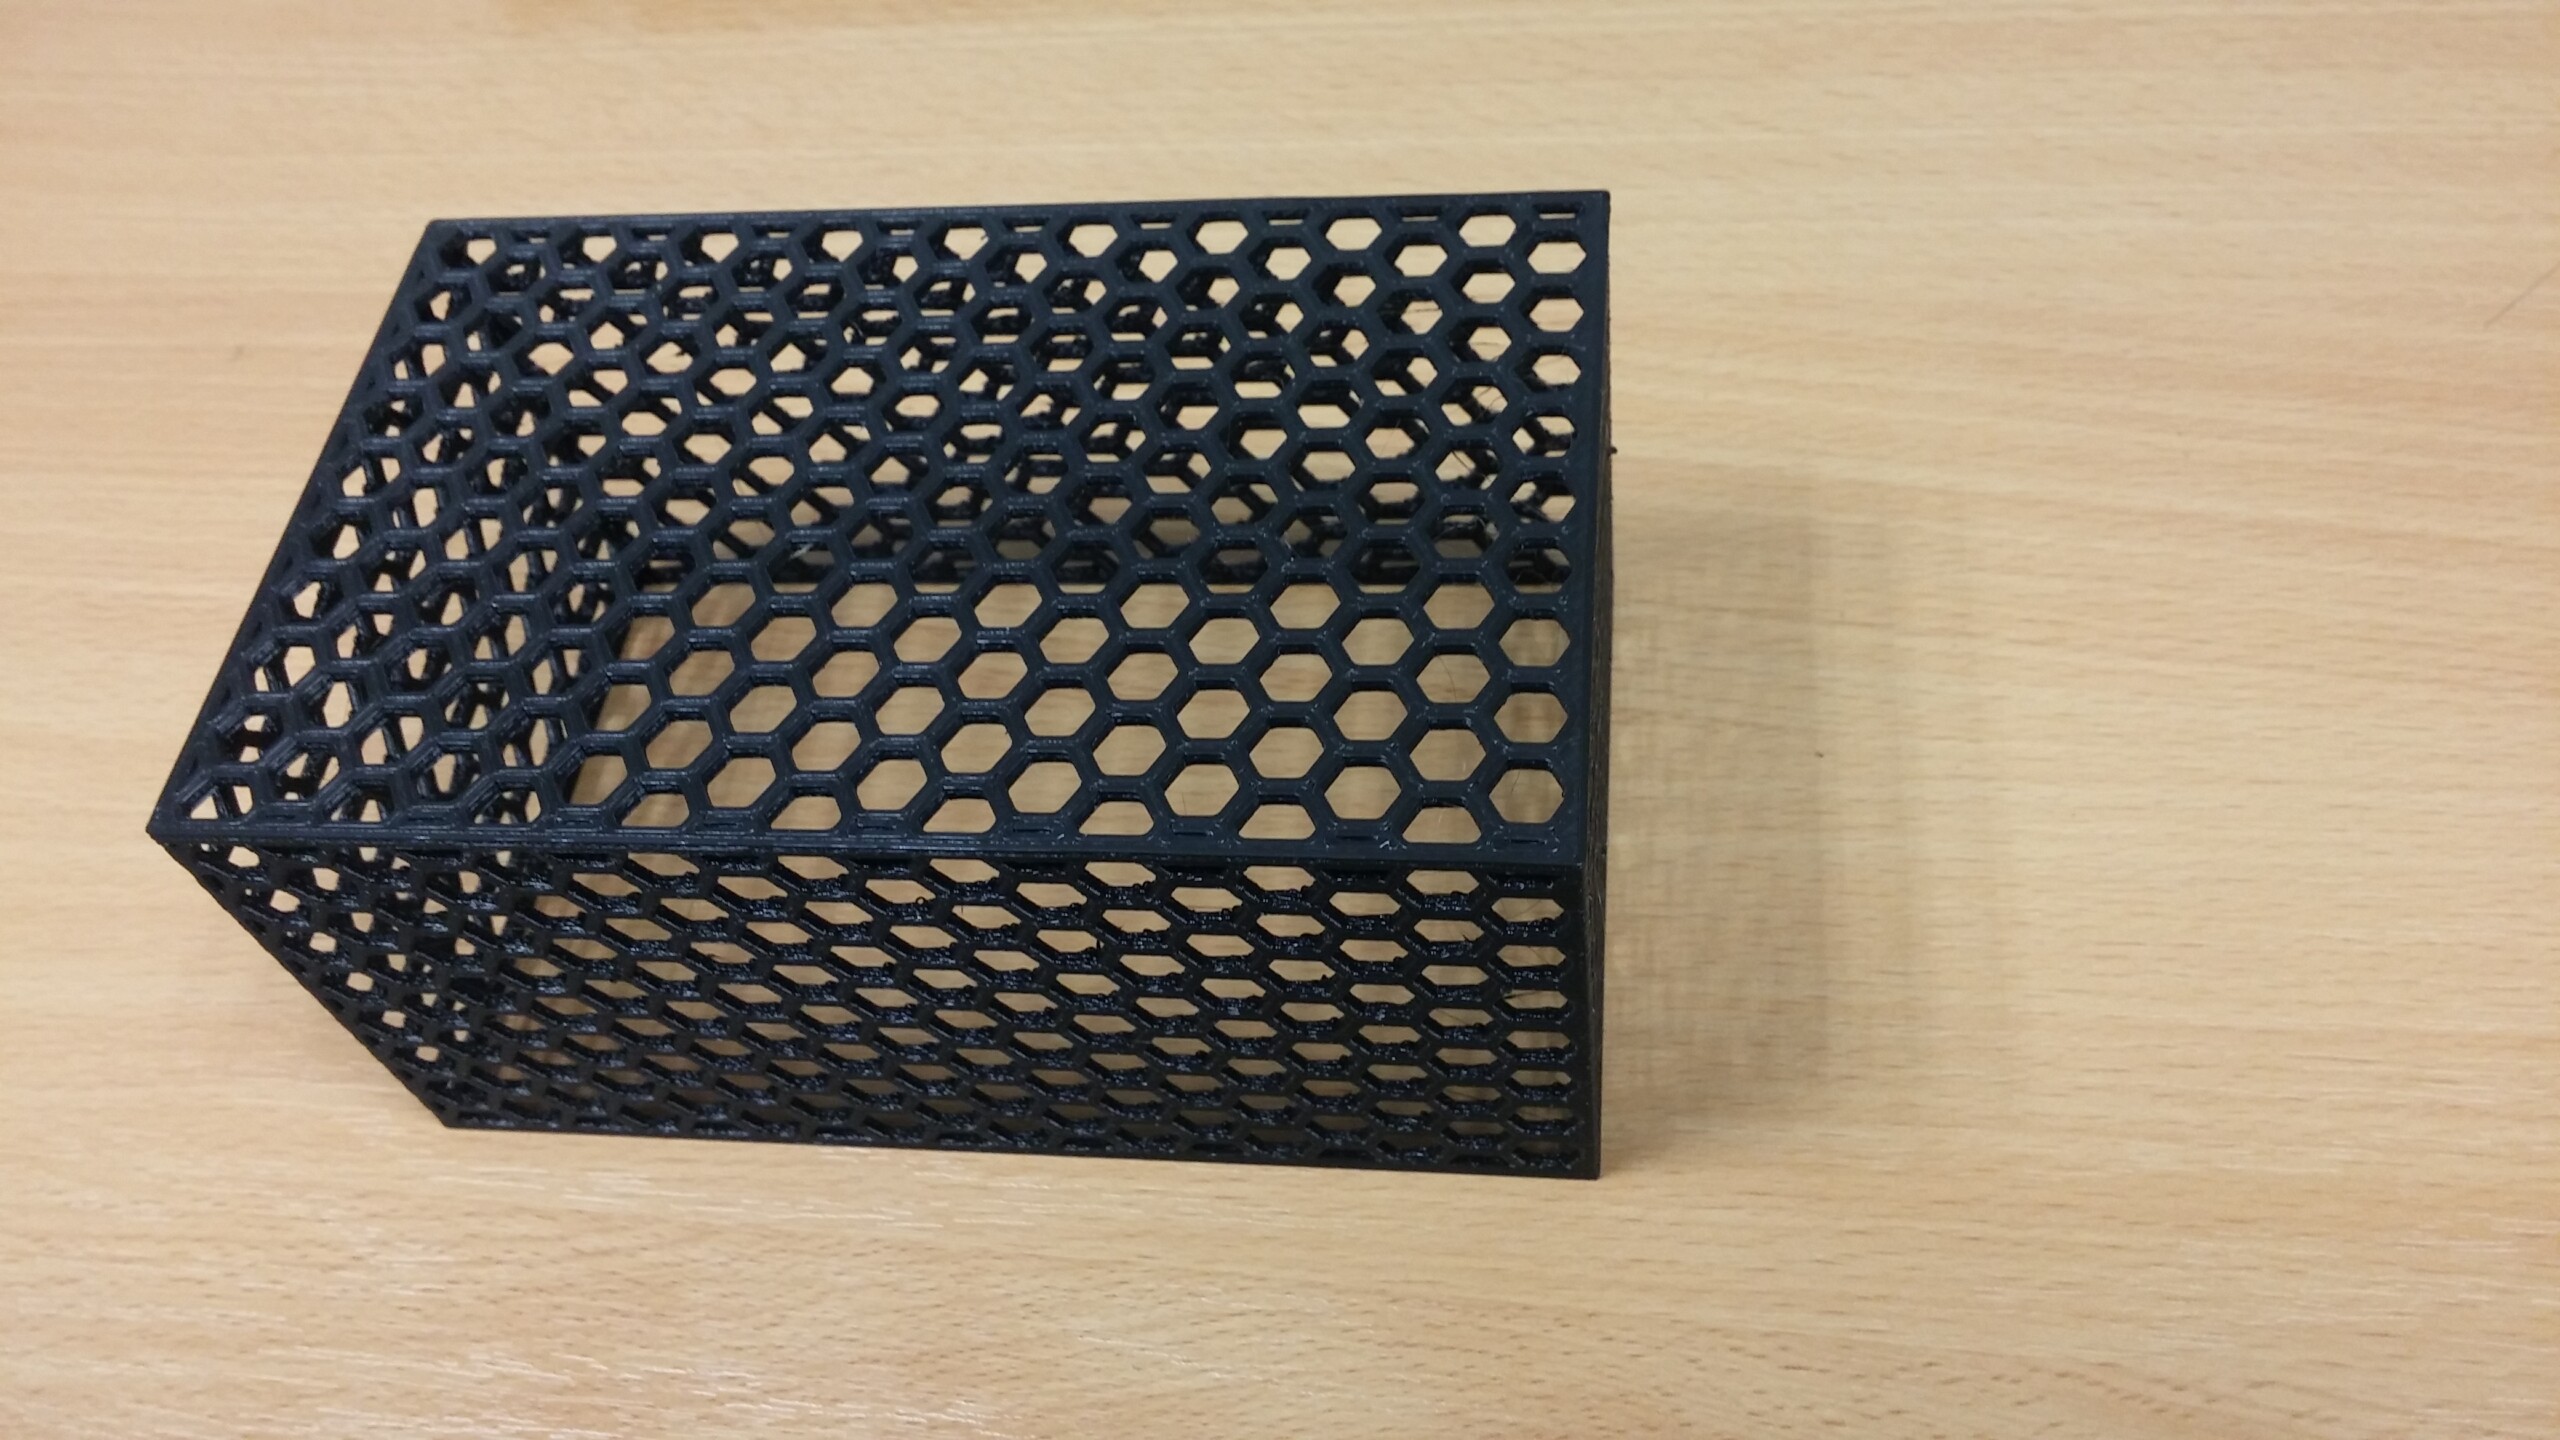 3D printed Basket